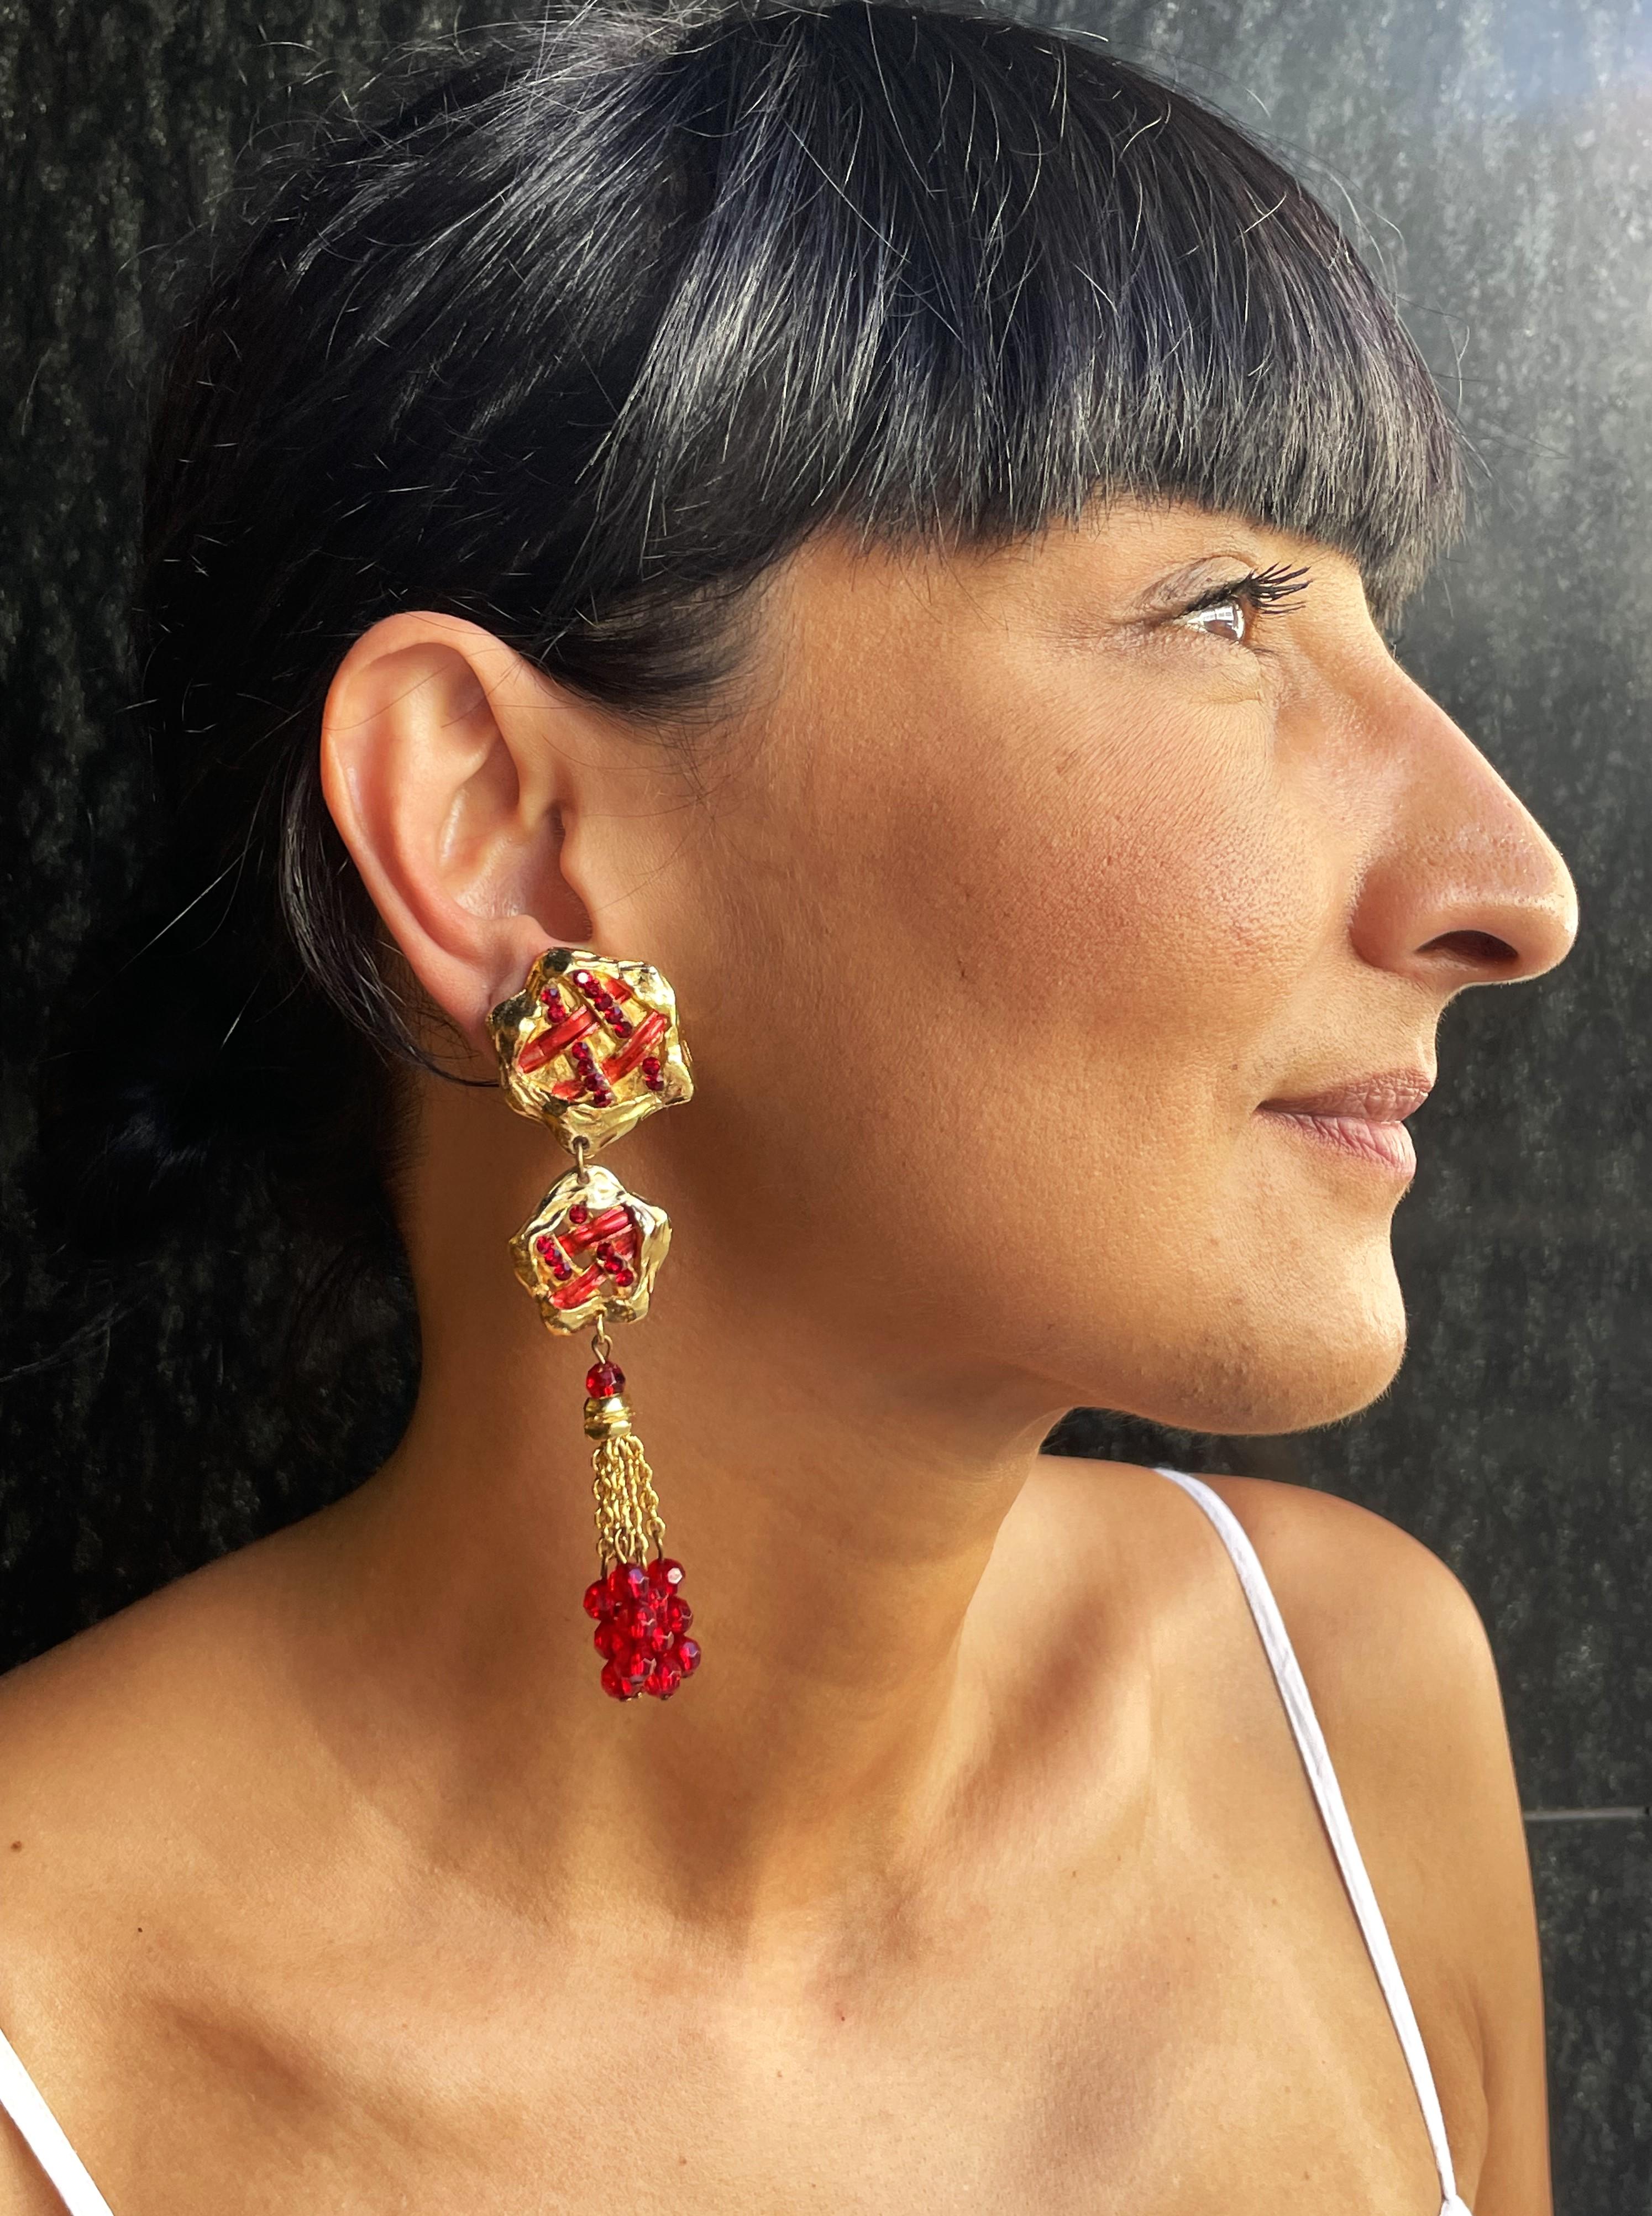 Longues barrettes d'oreilles conçues par Jacky de G Paris vers 2000. Ils se composent de 3 parties, de strass rouges et d'émail rouge.

Mesures
Longueur 10cm
Largeur de la partie supérieure 2,8 cm, 
la partie centrale a une largeur de 2,3 cm,
 la